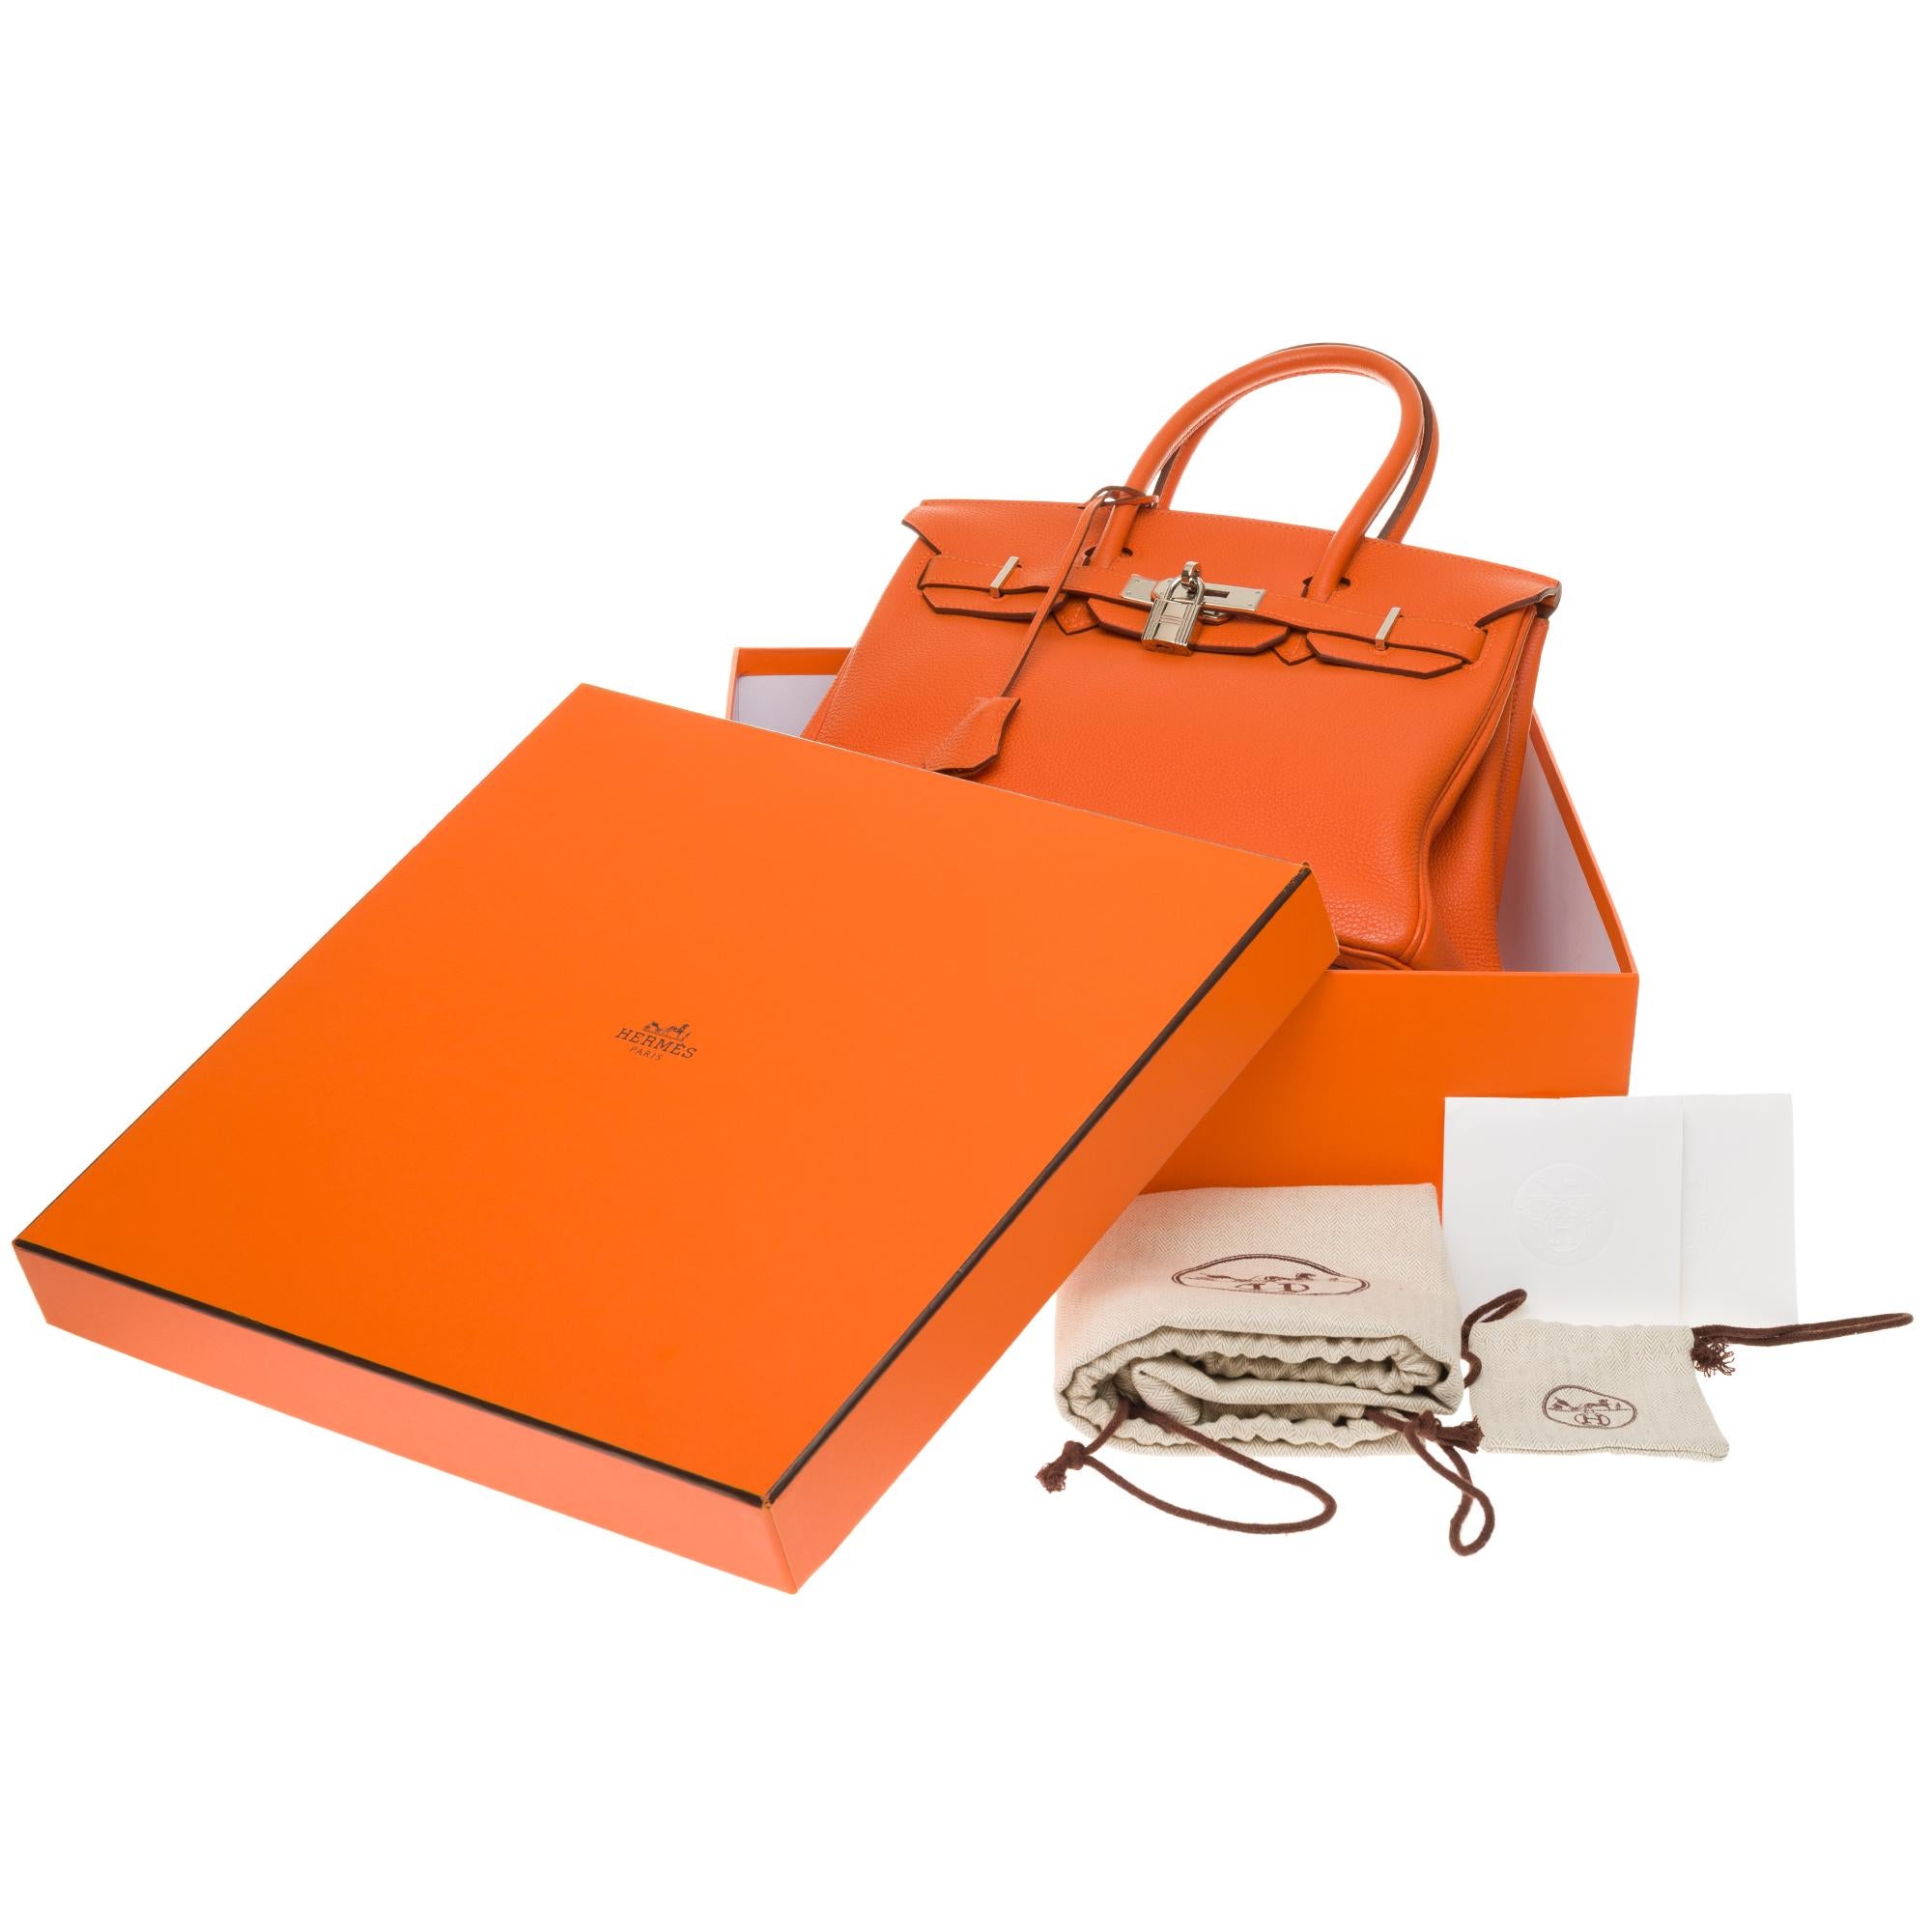 Hermès Birkin 30 handbag in Togo orange leather, PHW, new condition  6